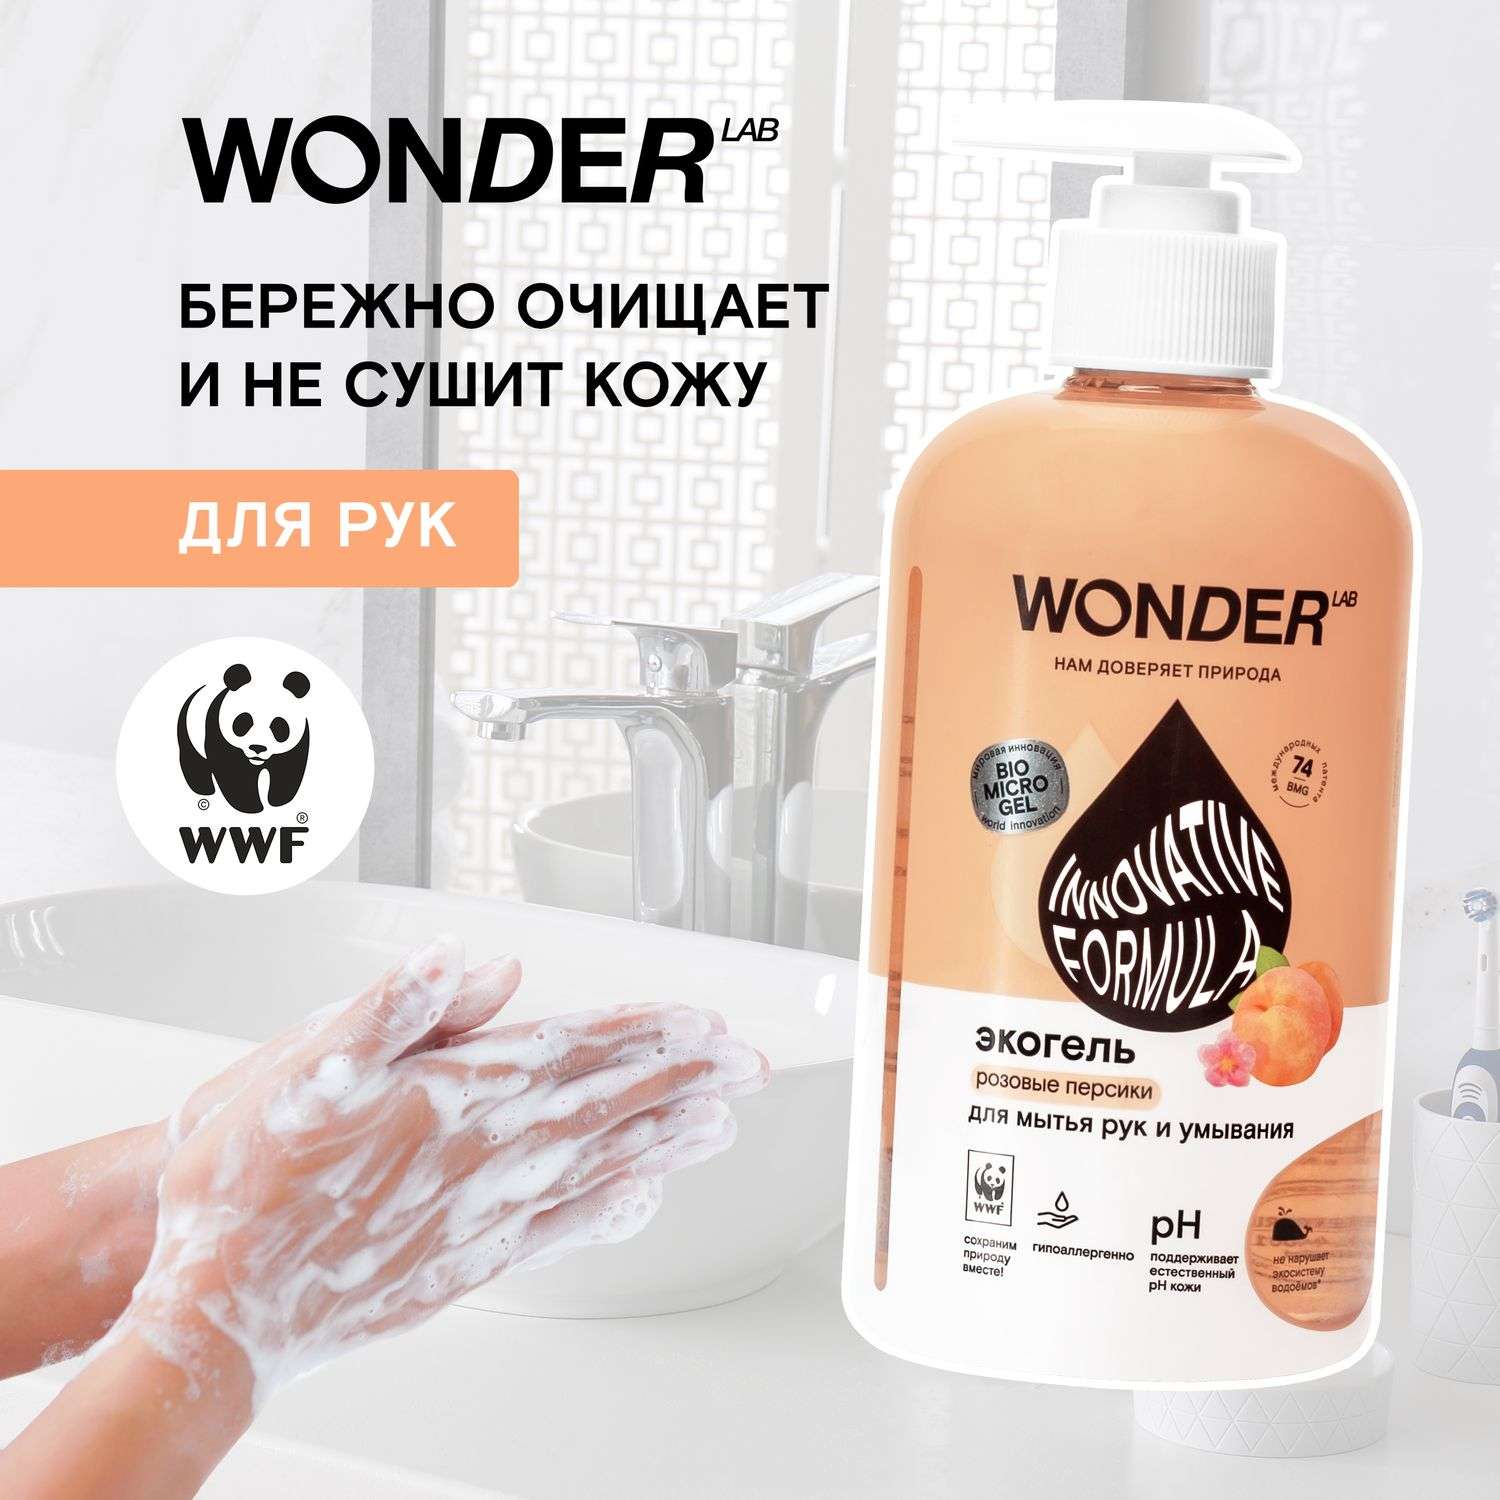 Гель для мытья рук и умывания WONDER Lab Розовые персики 500мл - фото 3